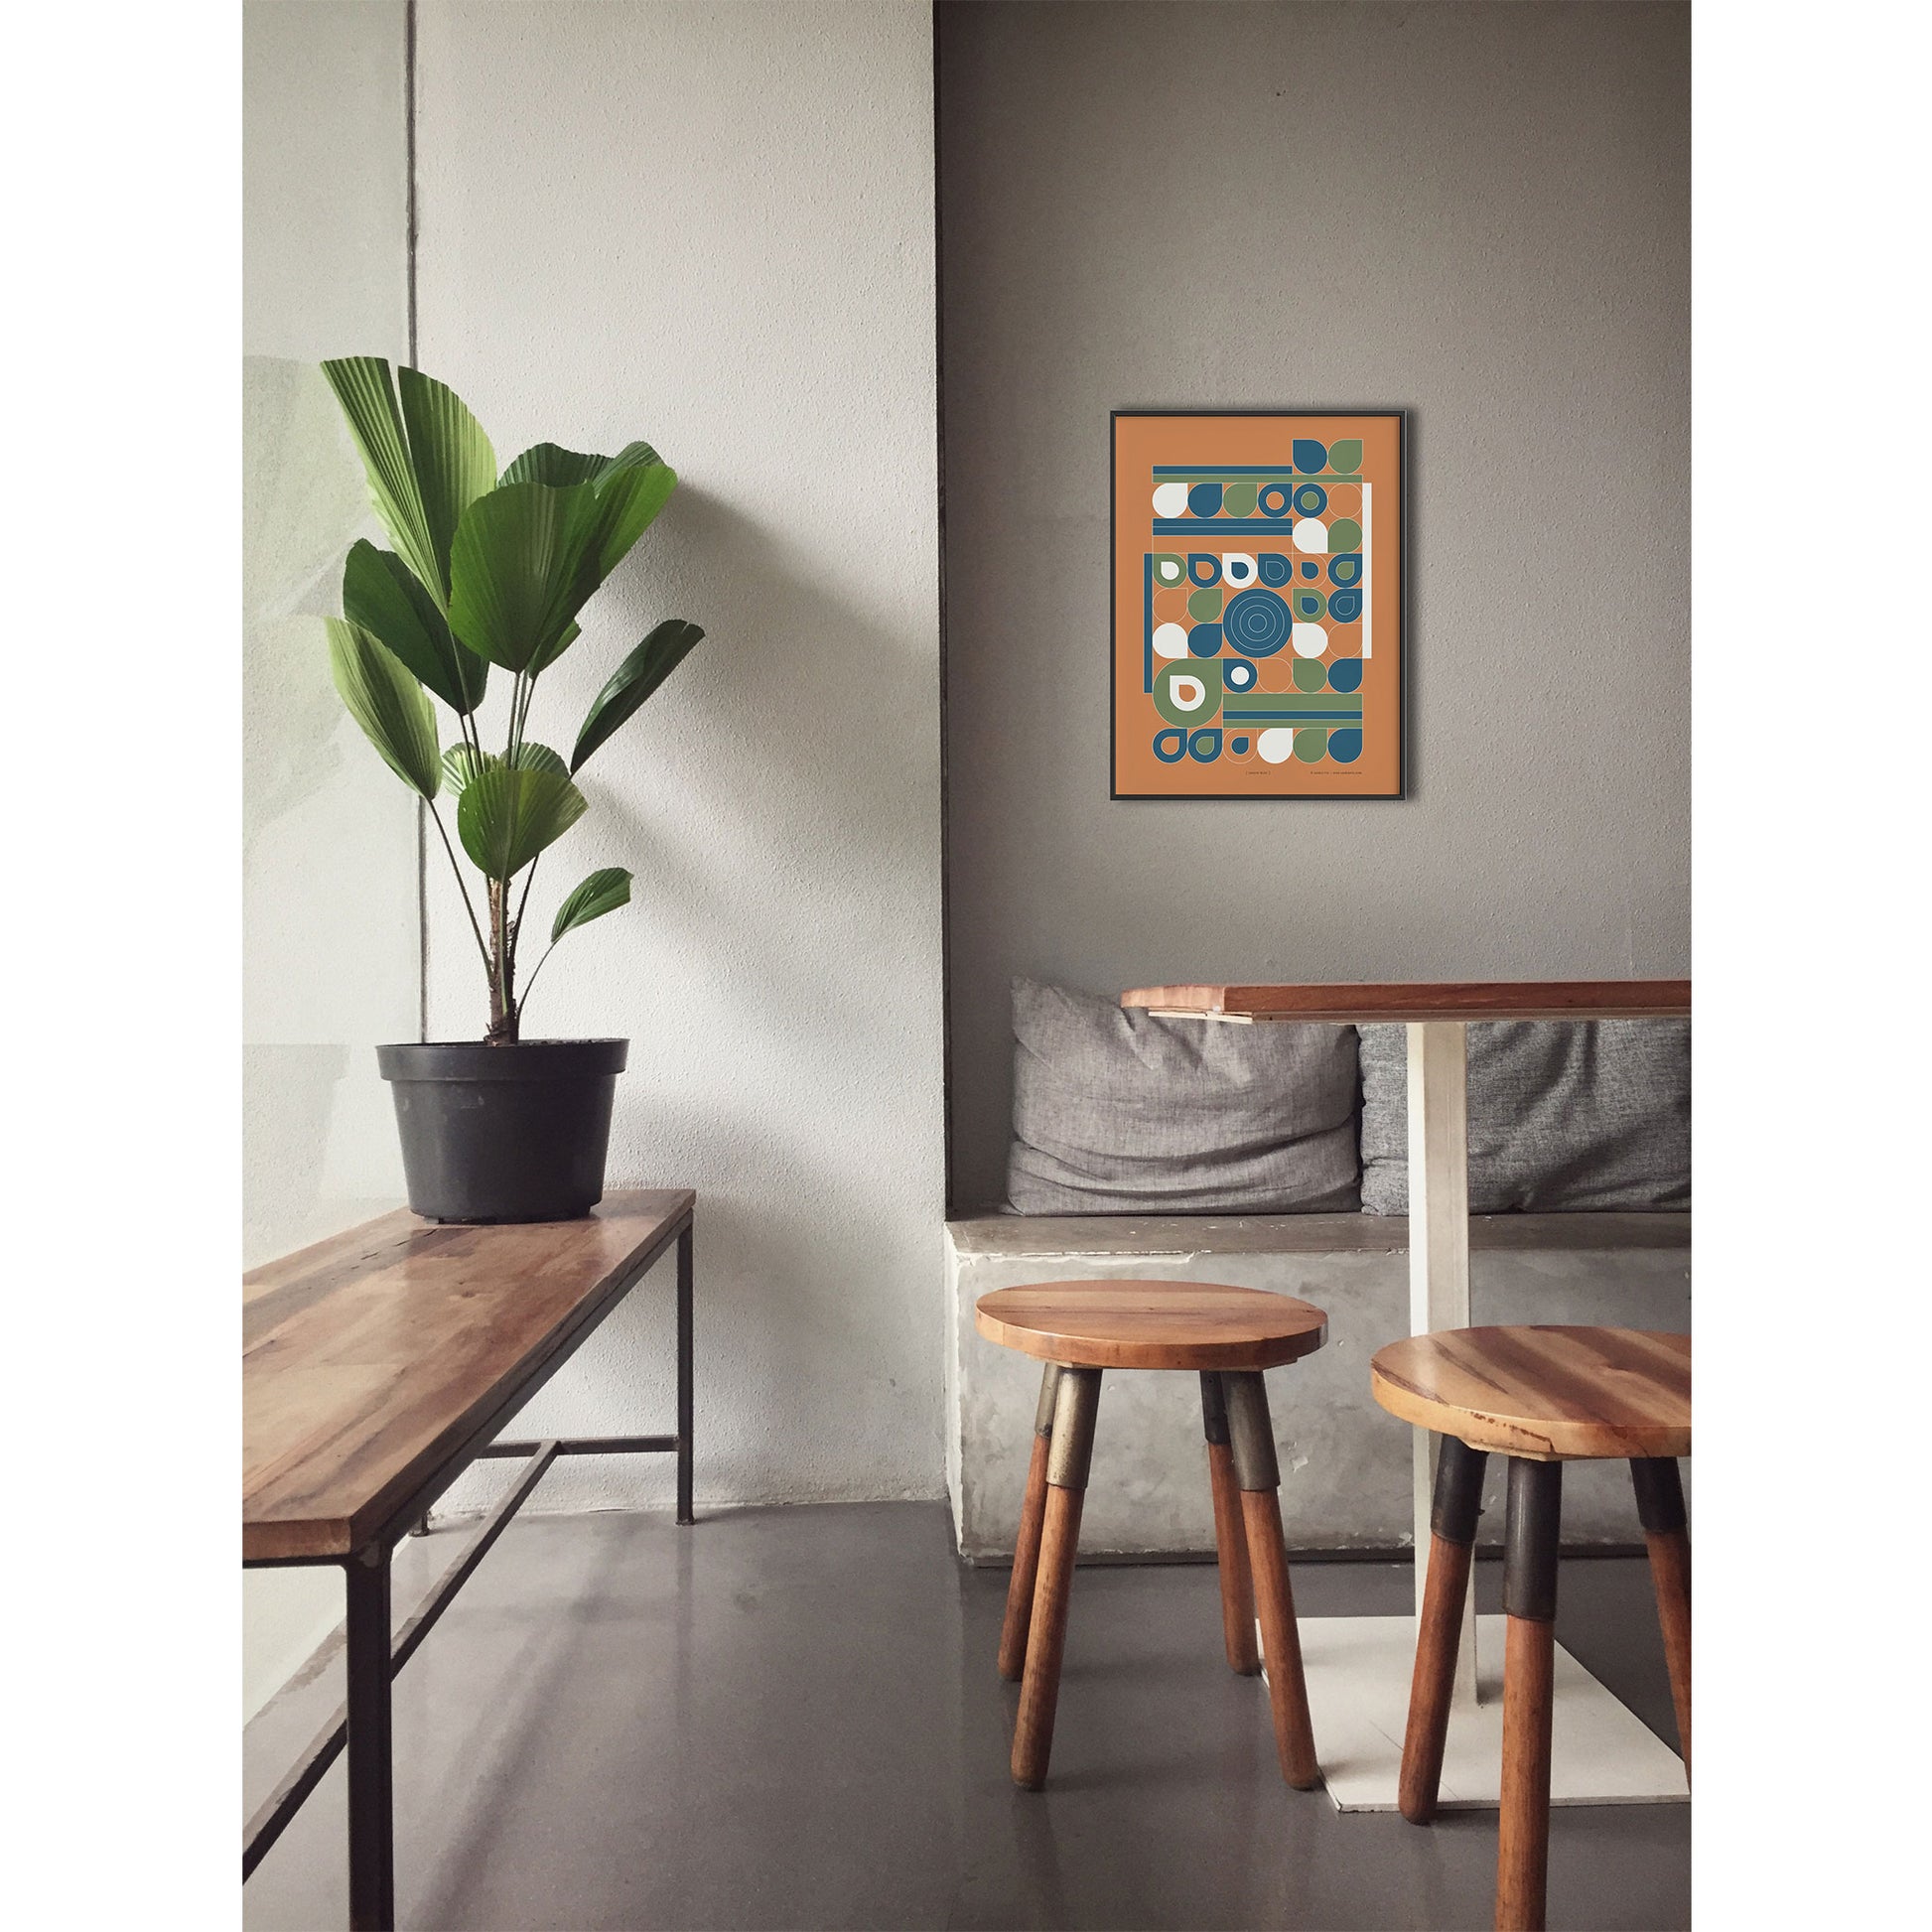 Productafbeelding, poster "jardin jaune", foto impressie 1, ingelijst hangend boven een tafel aan een wand, in een interieur met een plant en krukjes